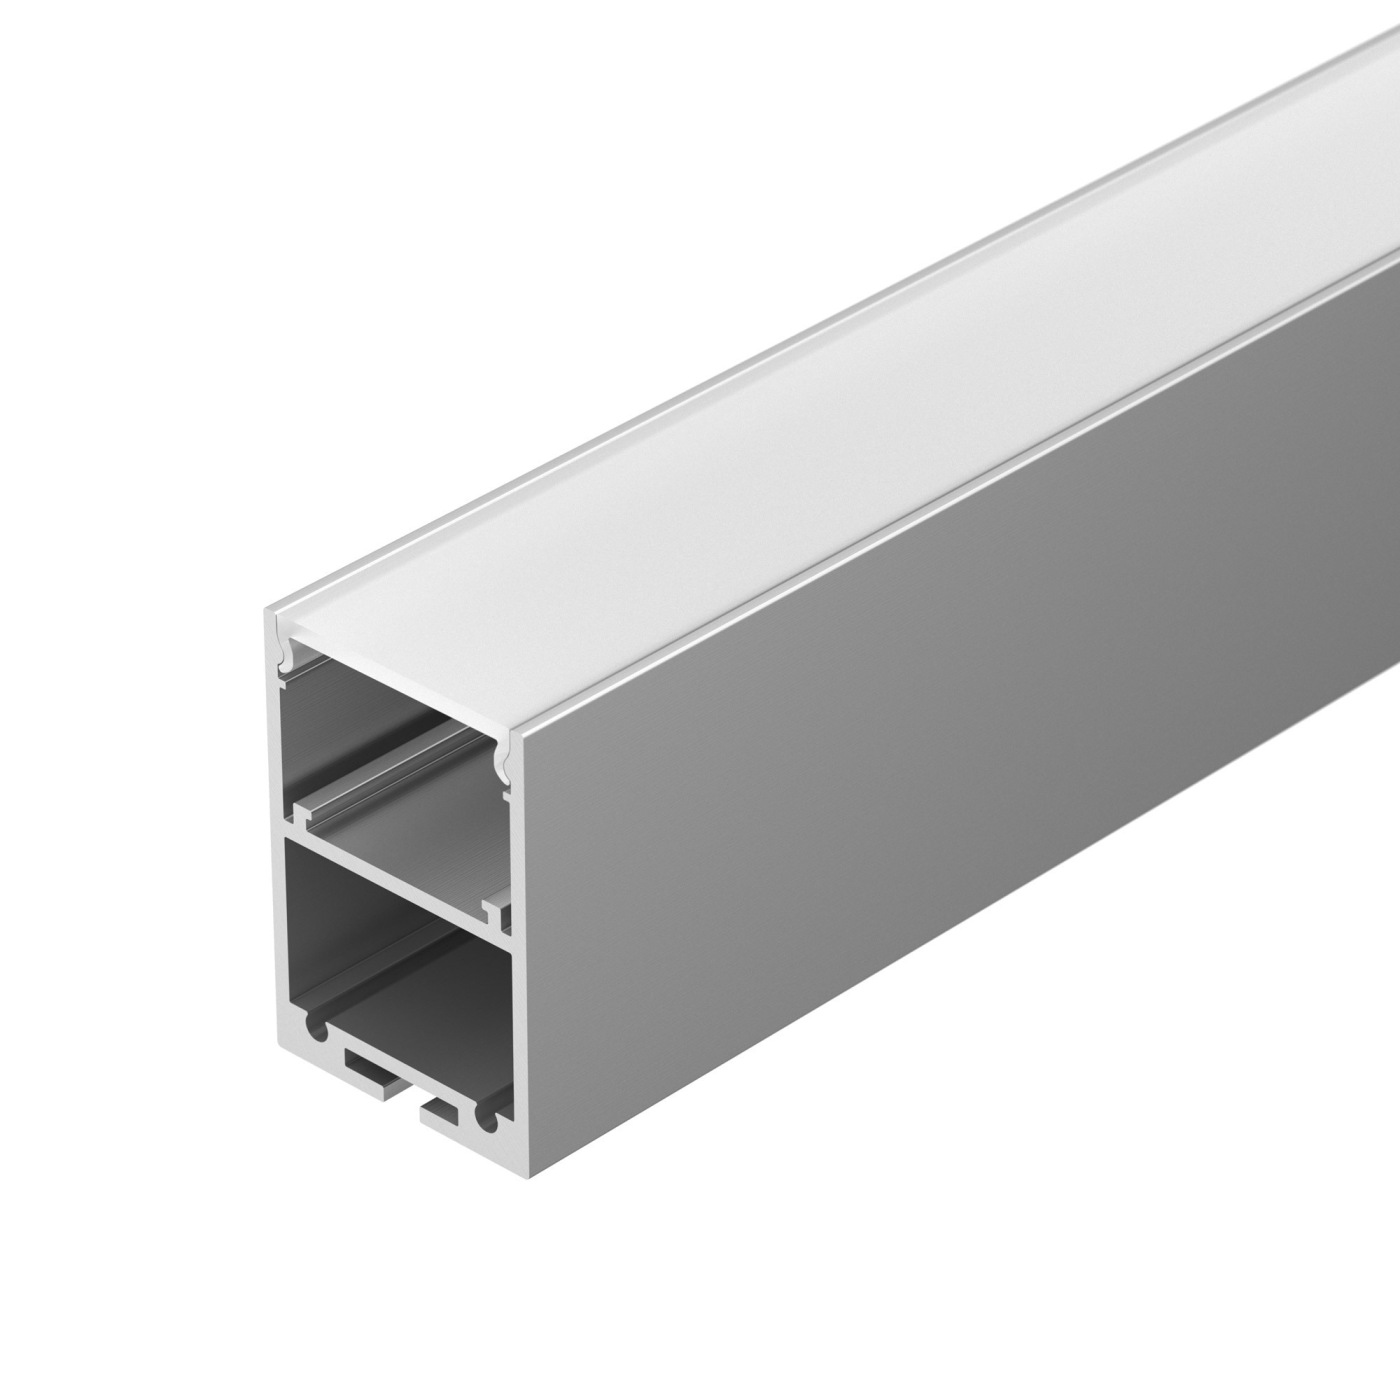 Профиль ARH-LINE-3750A-2000 ANOD профиль алюминиевый накладной подвесной с отсеком для бп серебро cab267